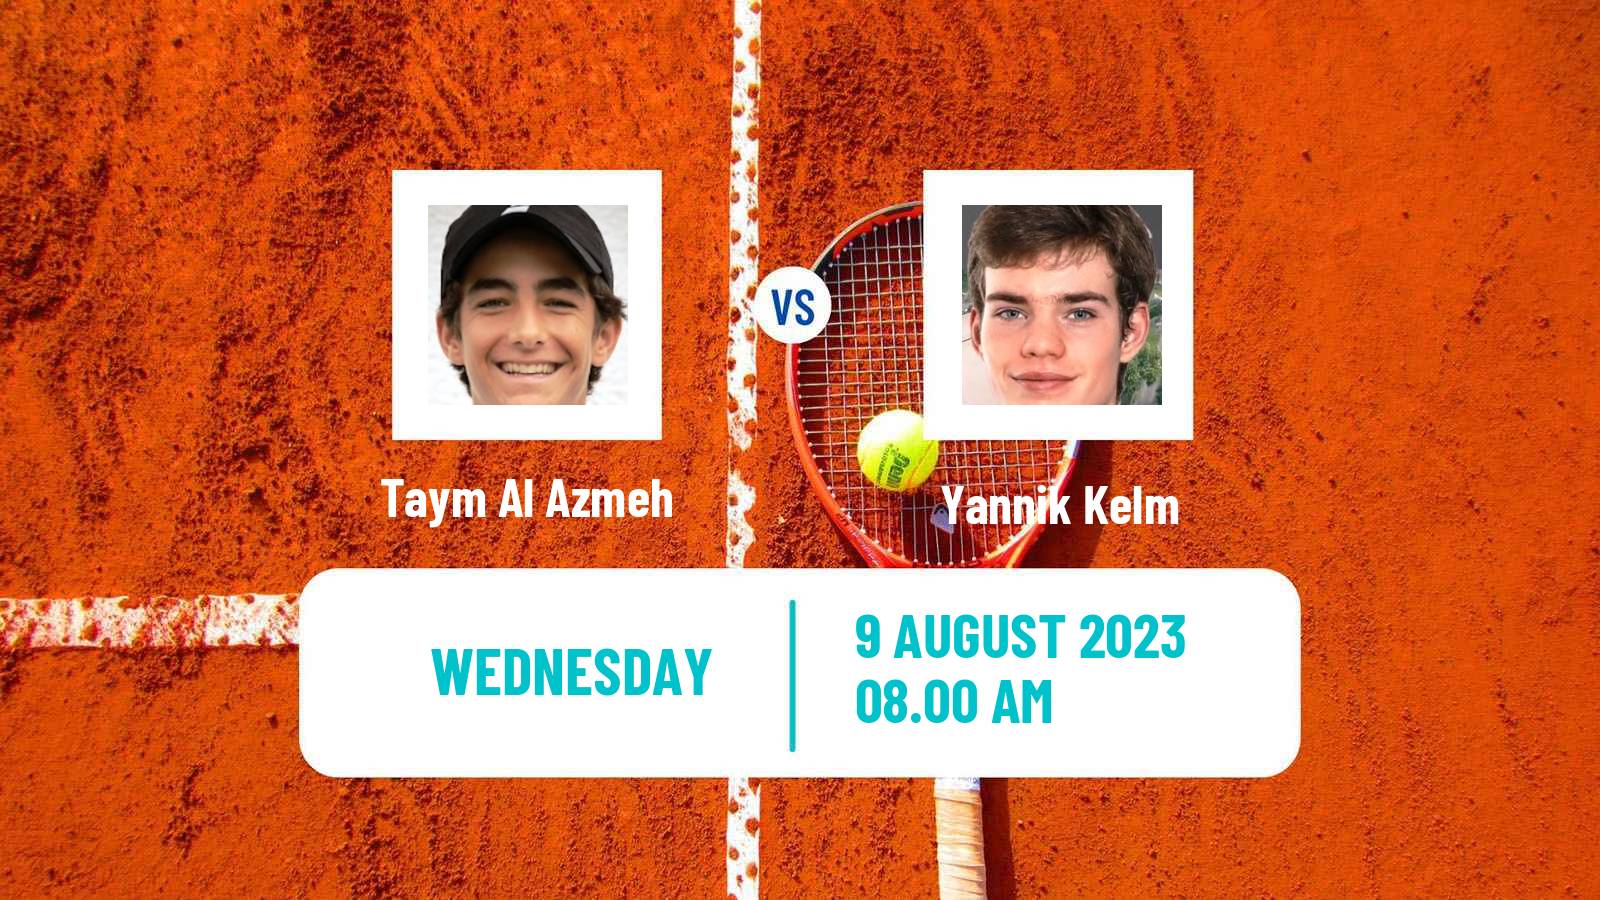 Tennis ITF M15 Frankfurt Am Main Men 2023 Taym Al Azmeh - Yannik Kelm